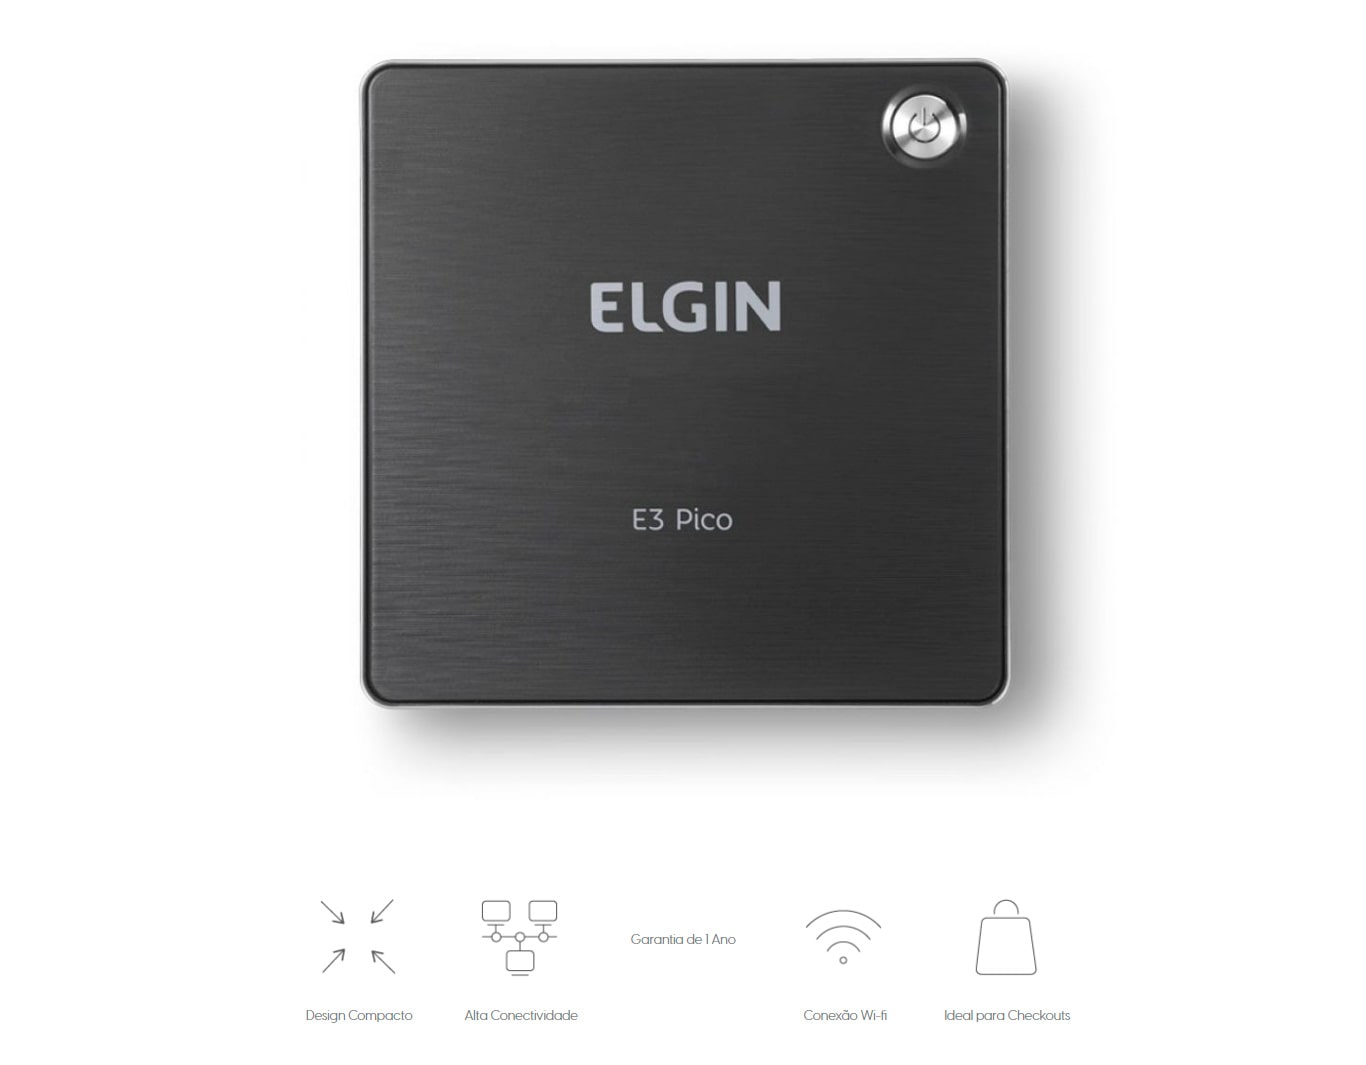 Mini PC Elgin Newera E3 Pico Intel Atom x5-Z8350, RAM 2GB, 32GB